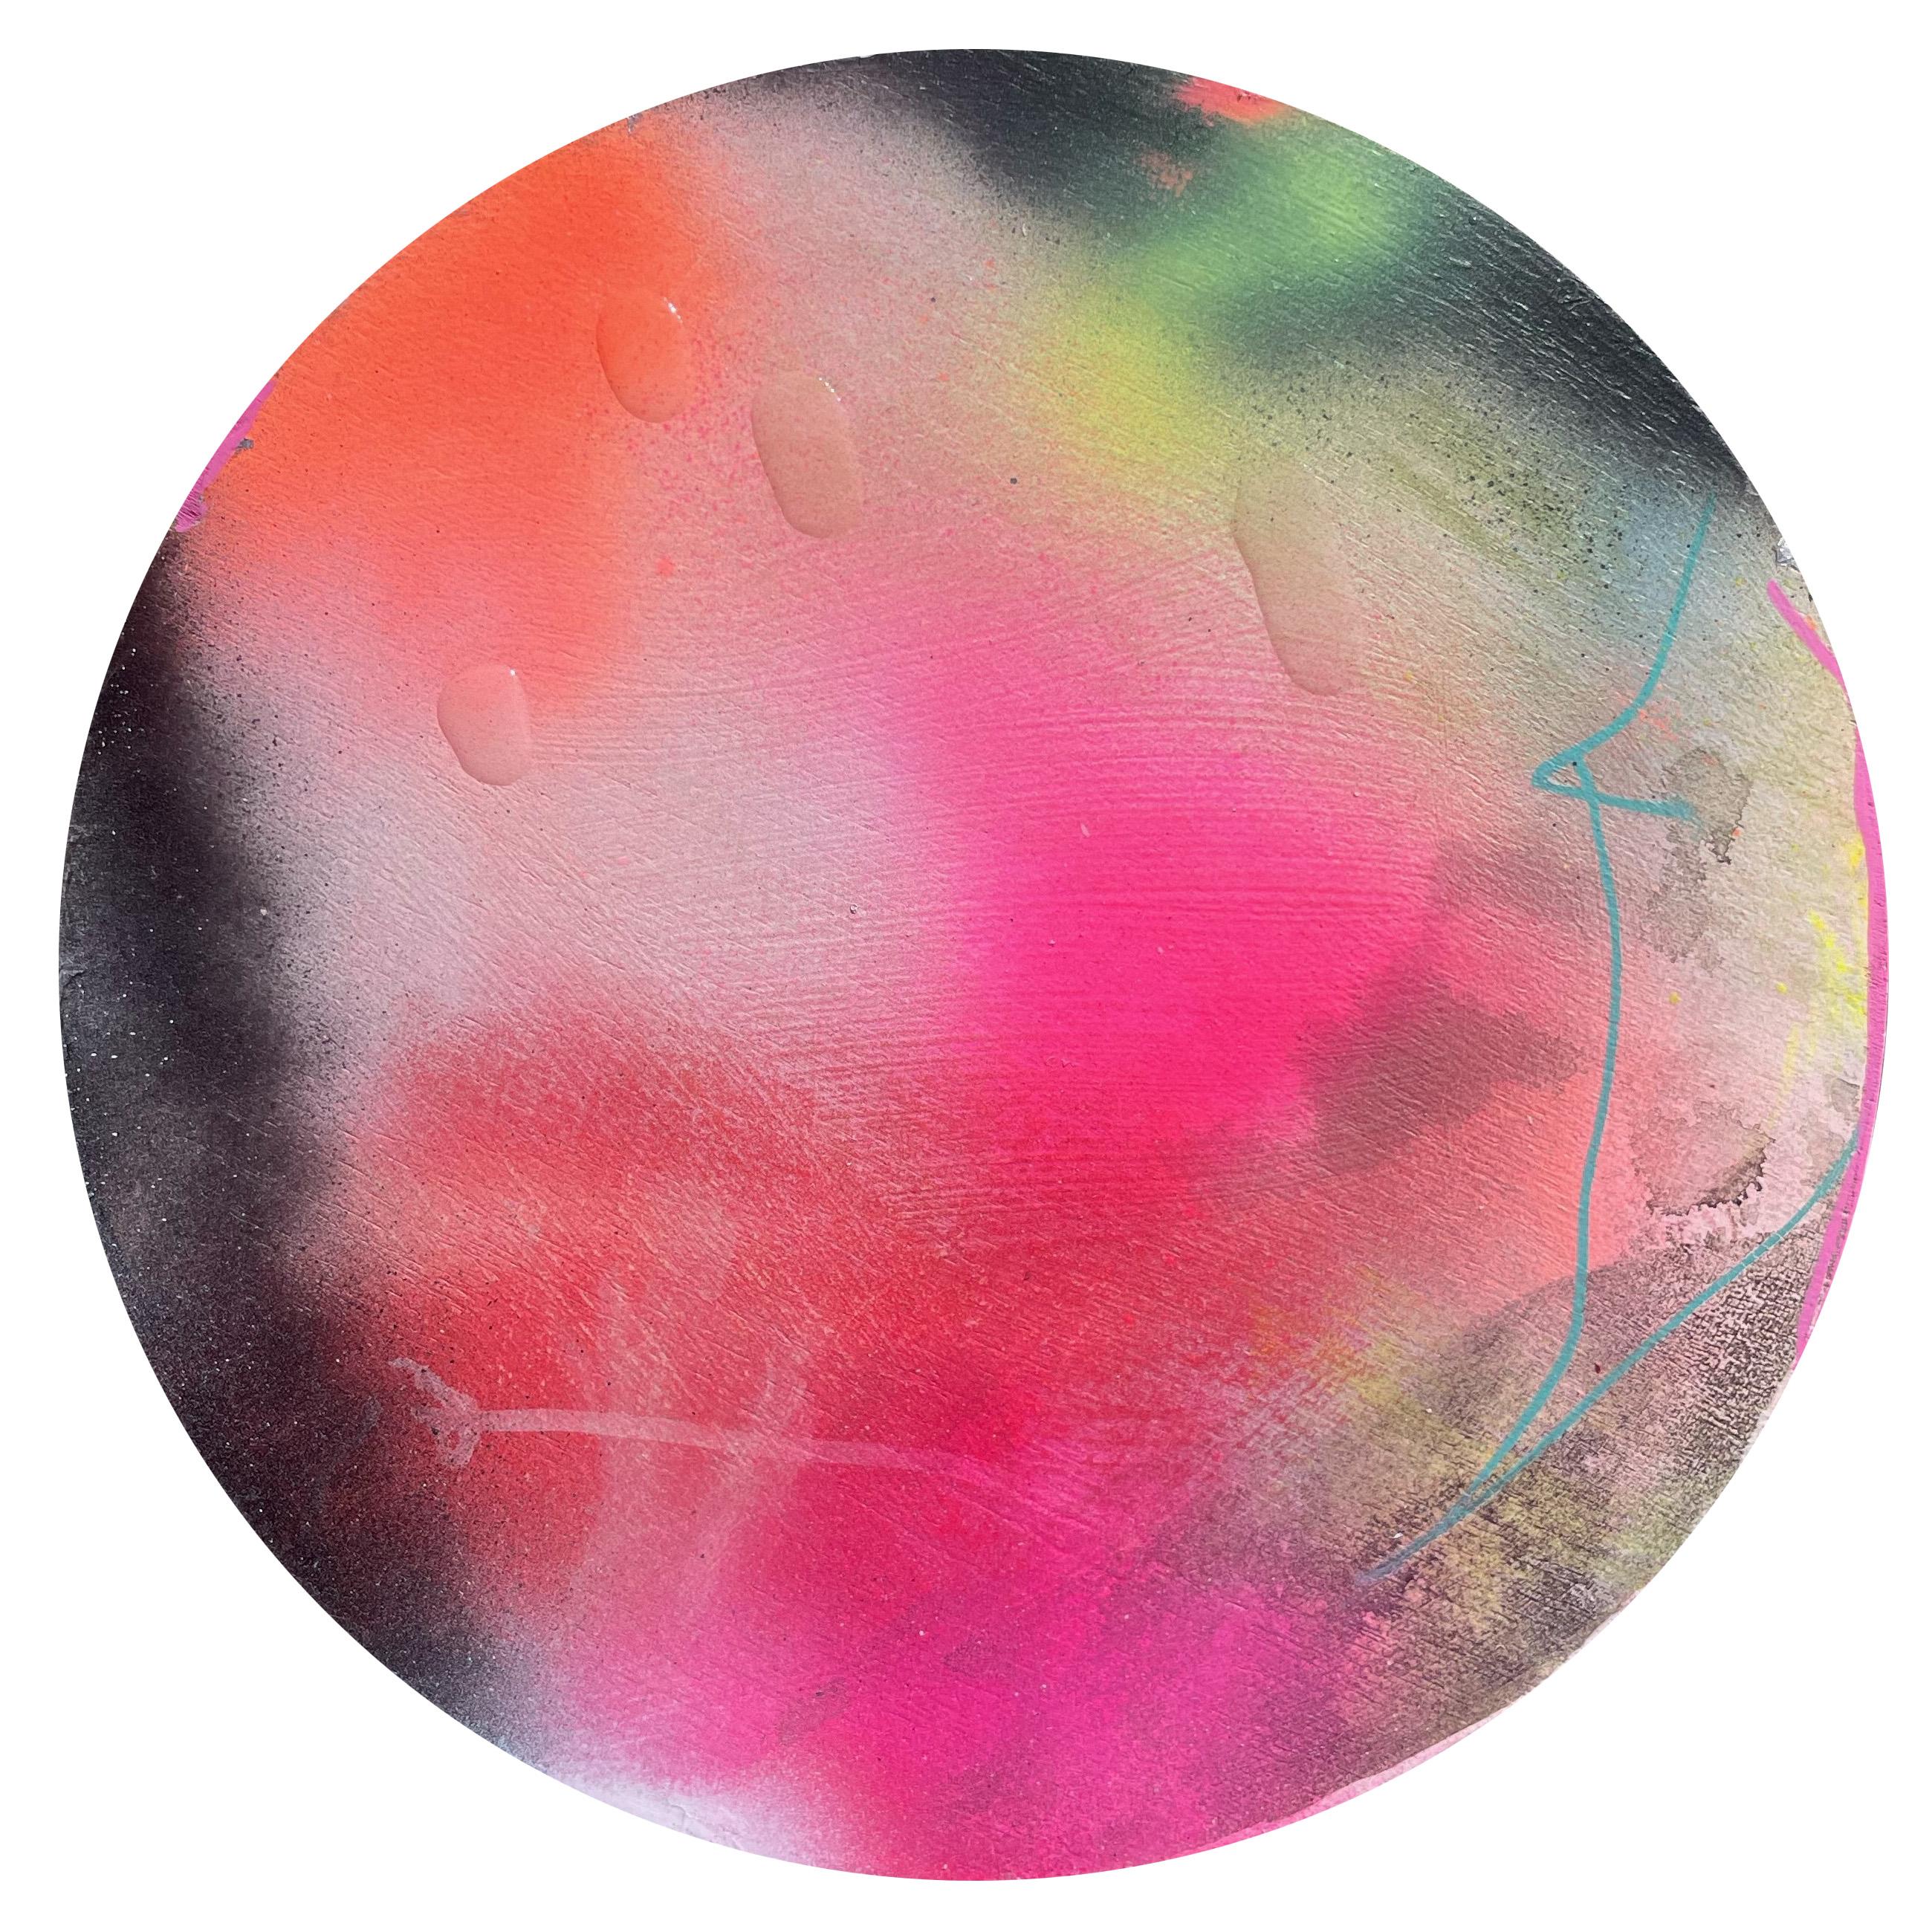 "Perlende Tautropfen 5" Zeitgenössische farbenfrohe abstrakte kreisförmige Malerei